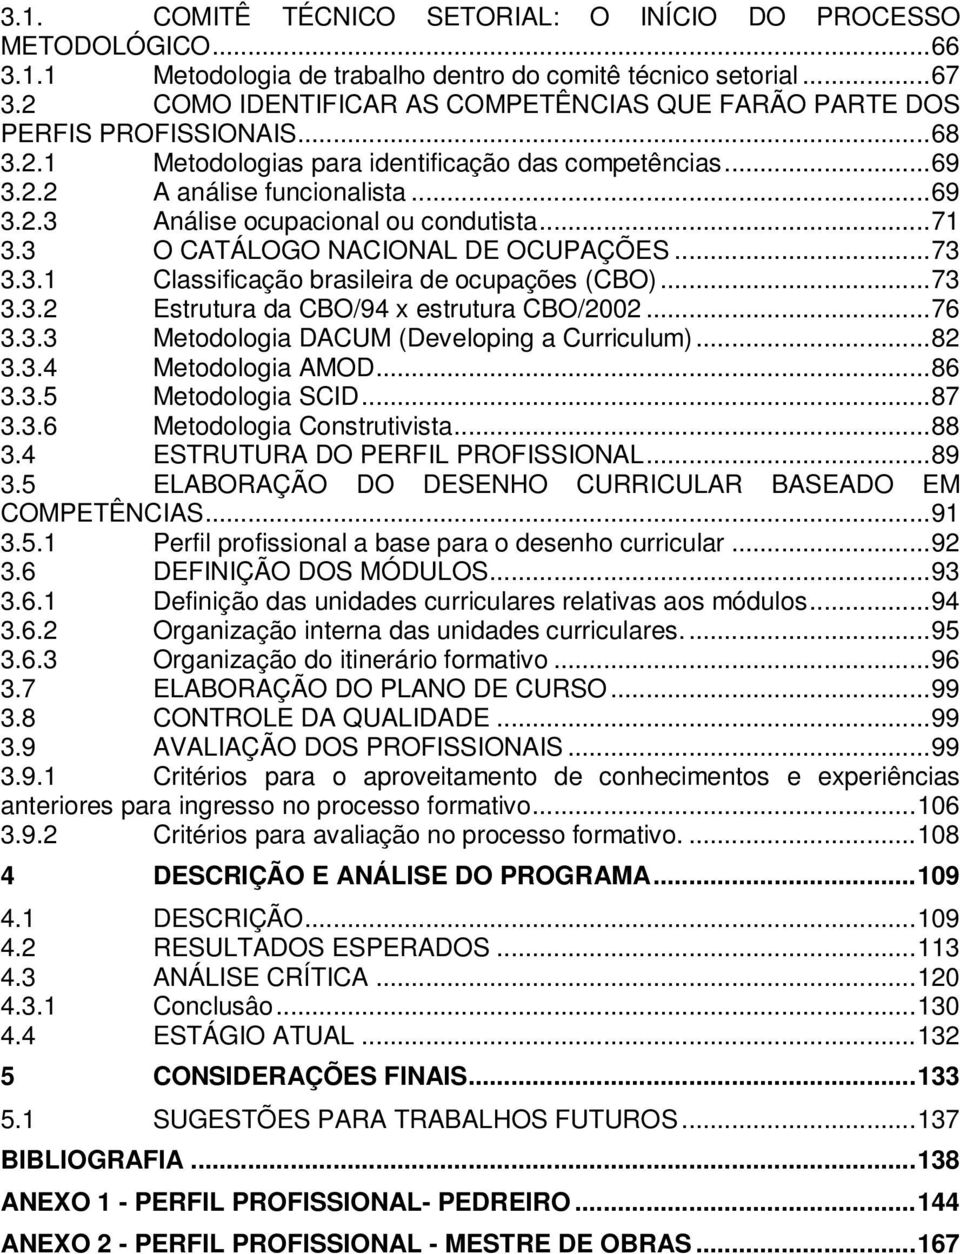 ..71 3.3 O CATÁLOGO NACIONAL DE OCUPAÇÕES...73 3.3.1 Classificação brasileira de ocupações (CBO)...73 3.3.2 Estrutura da CBO/94 x estrutura CBO/2002...76 3.3.3 Metodologia DACUM (Developing a Curriculum).